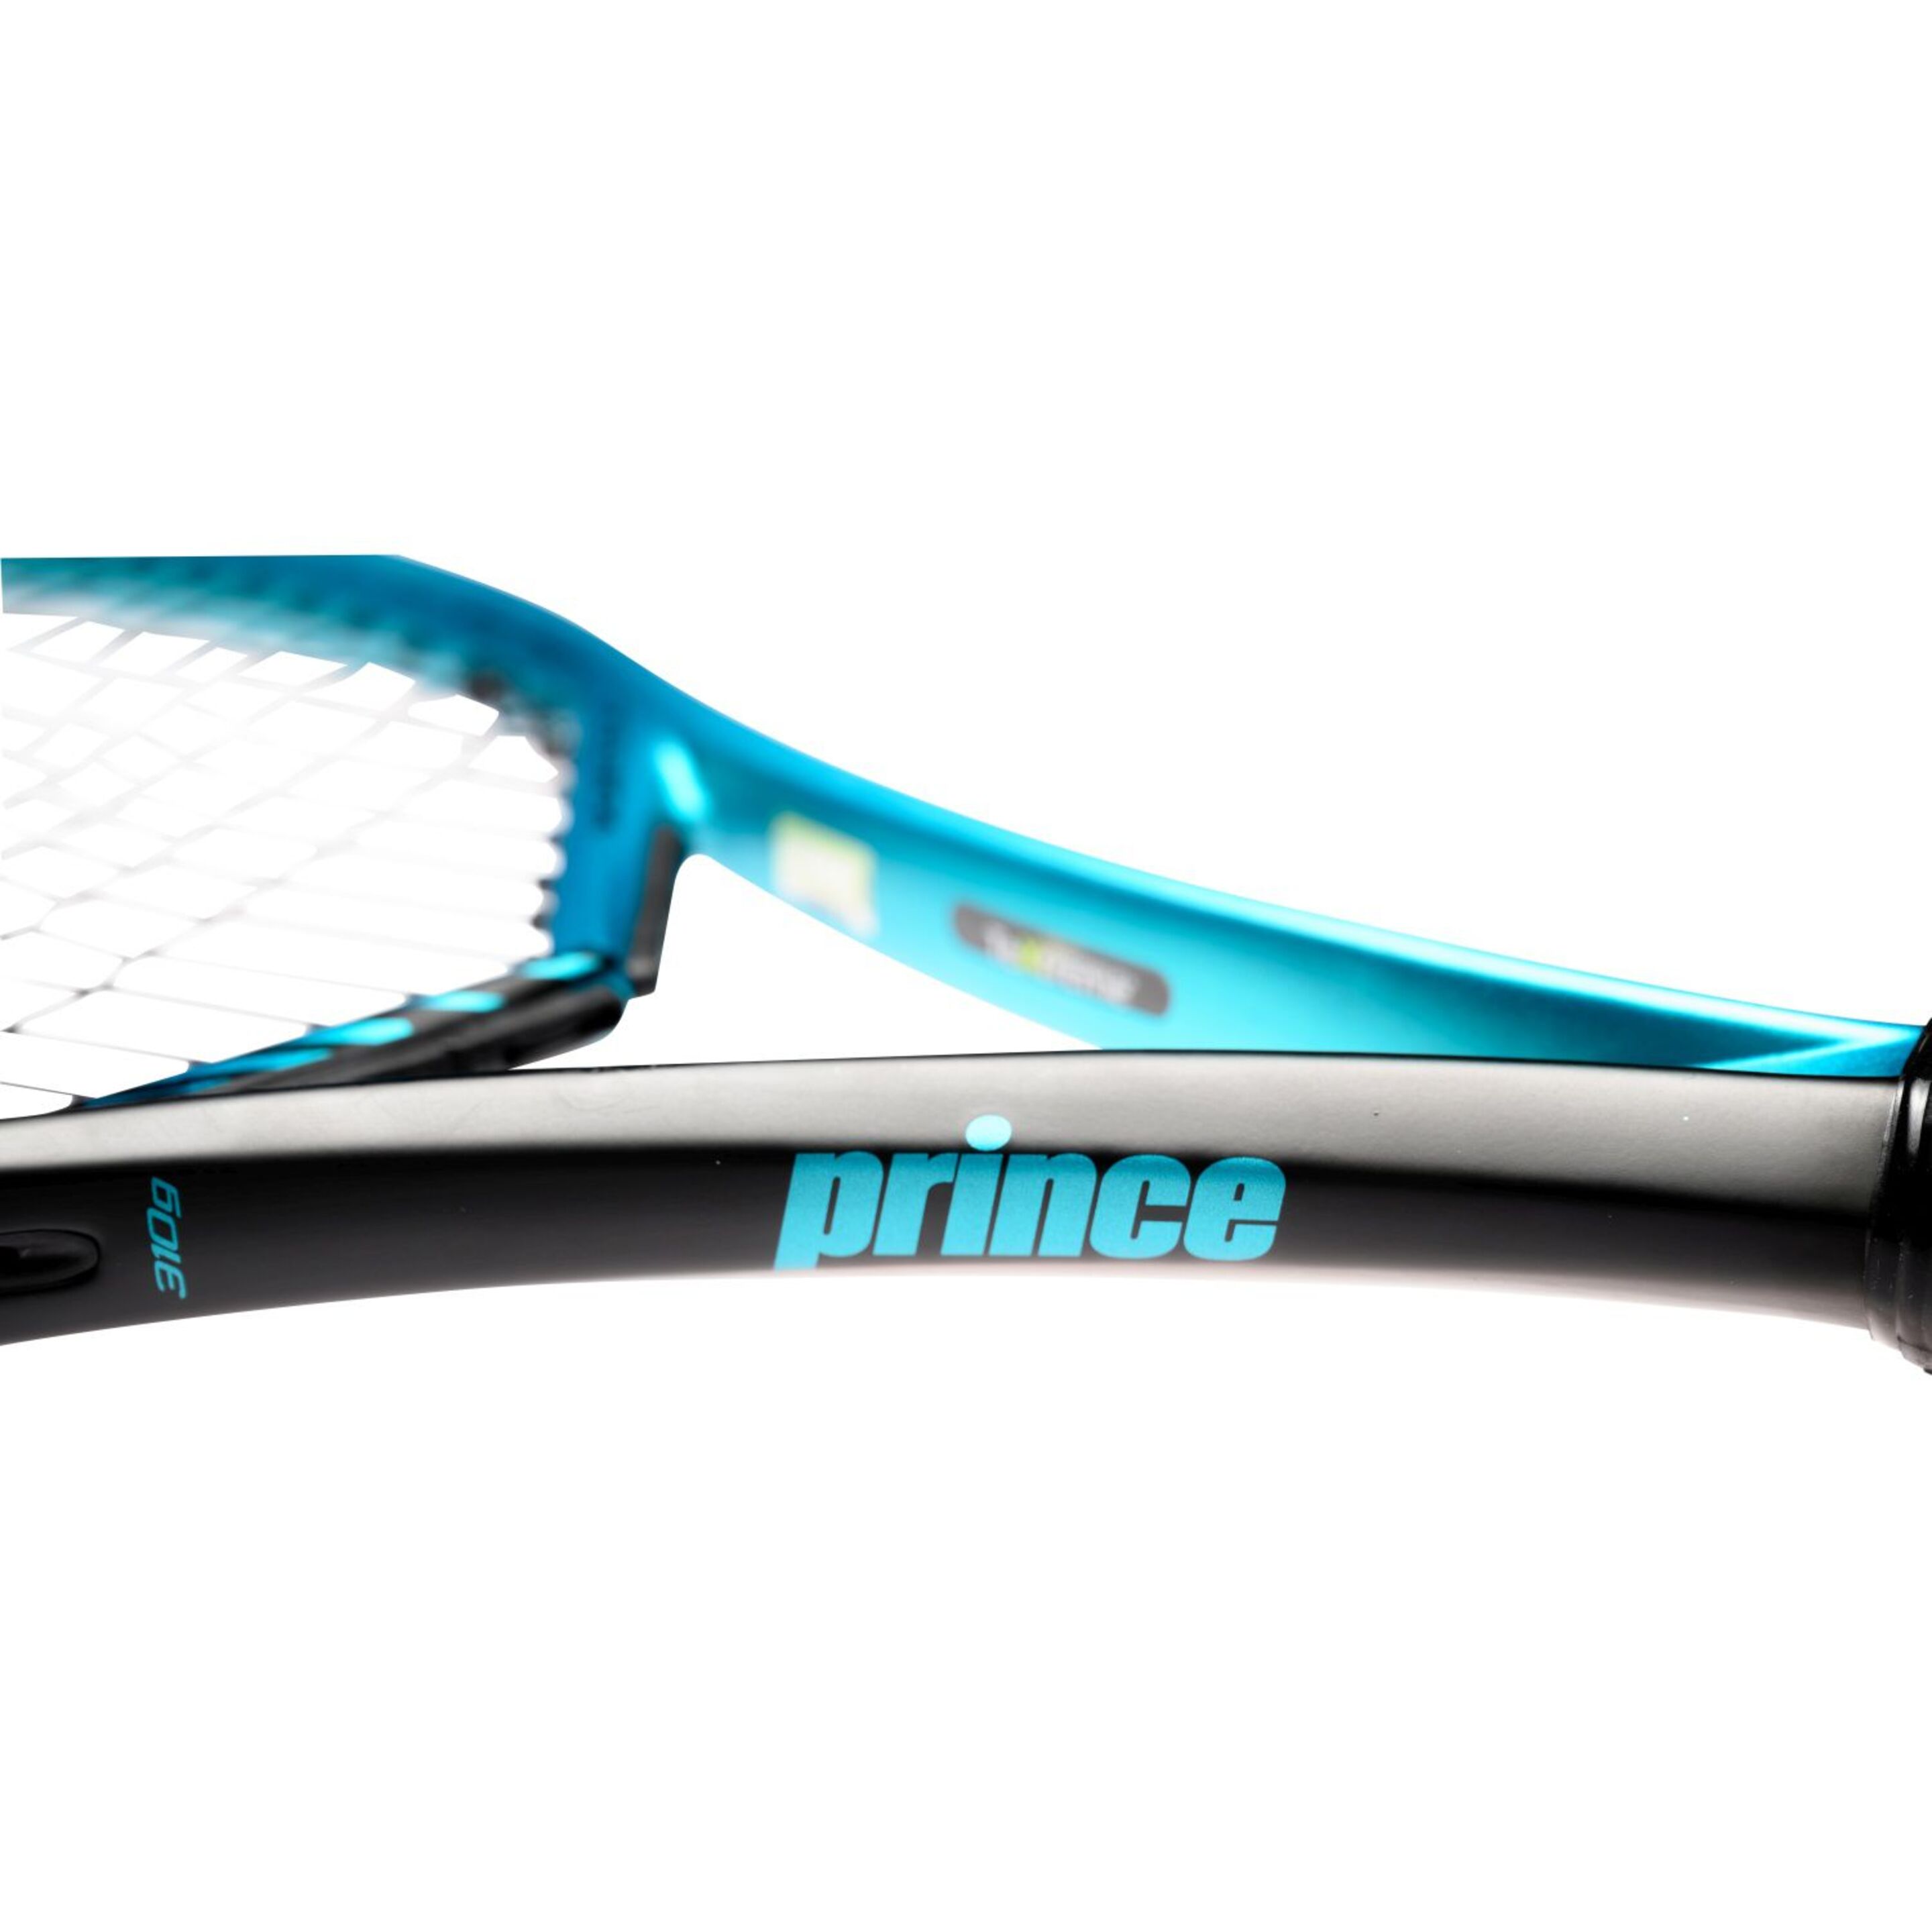 Raqueta De Tenis Prince Vortex 100 310 G (sin Encordar Y Sin Funda) - Negro/Azul  MKP